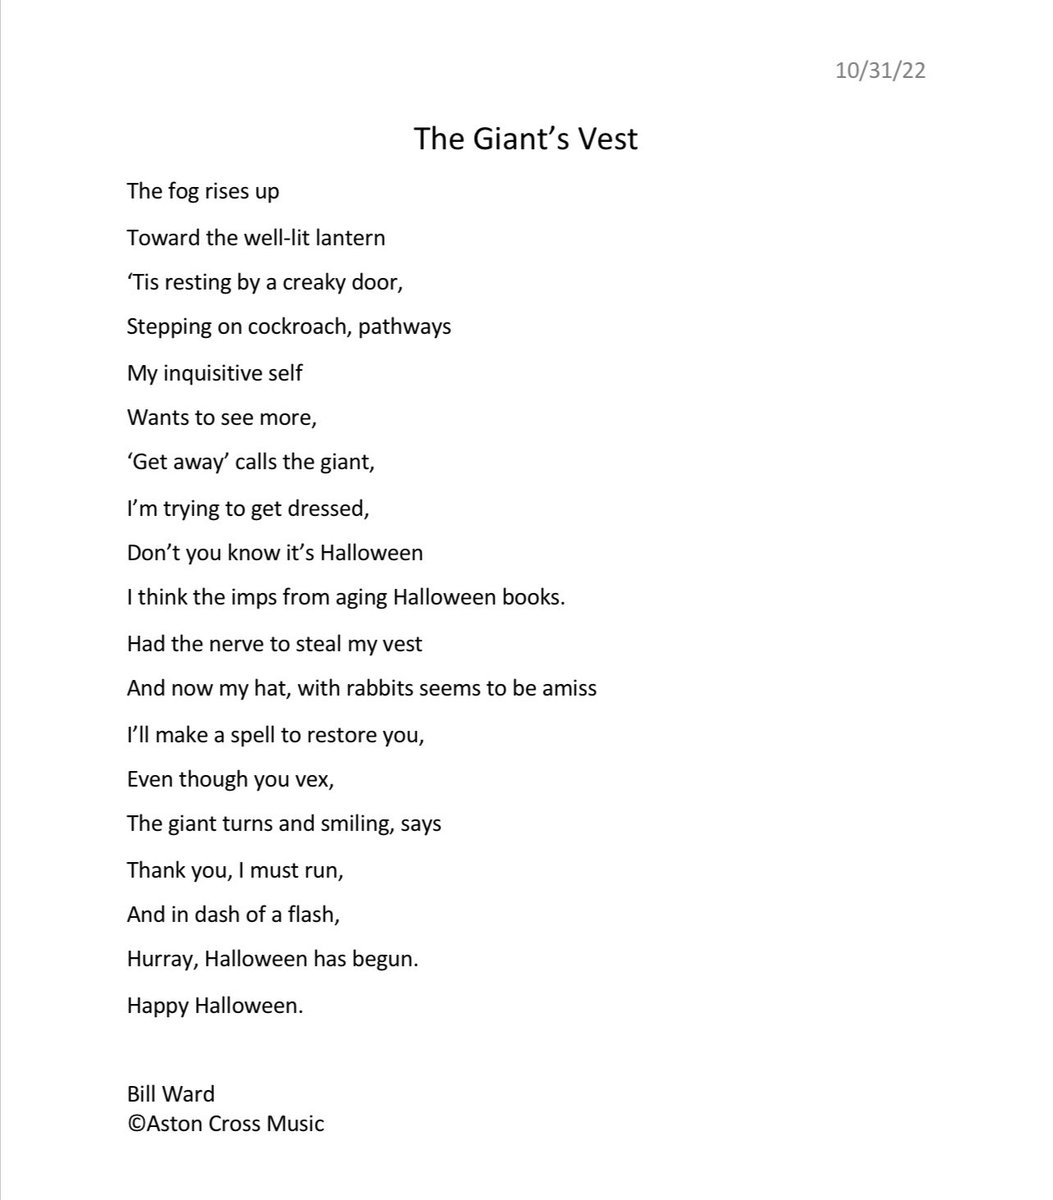 The Giant’s Vest